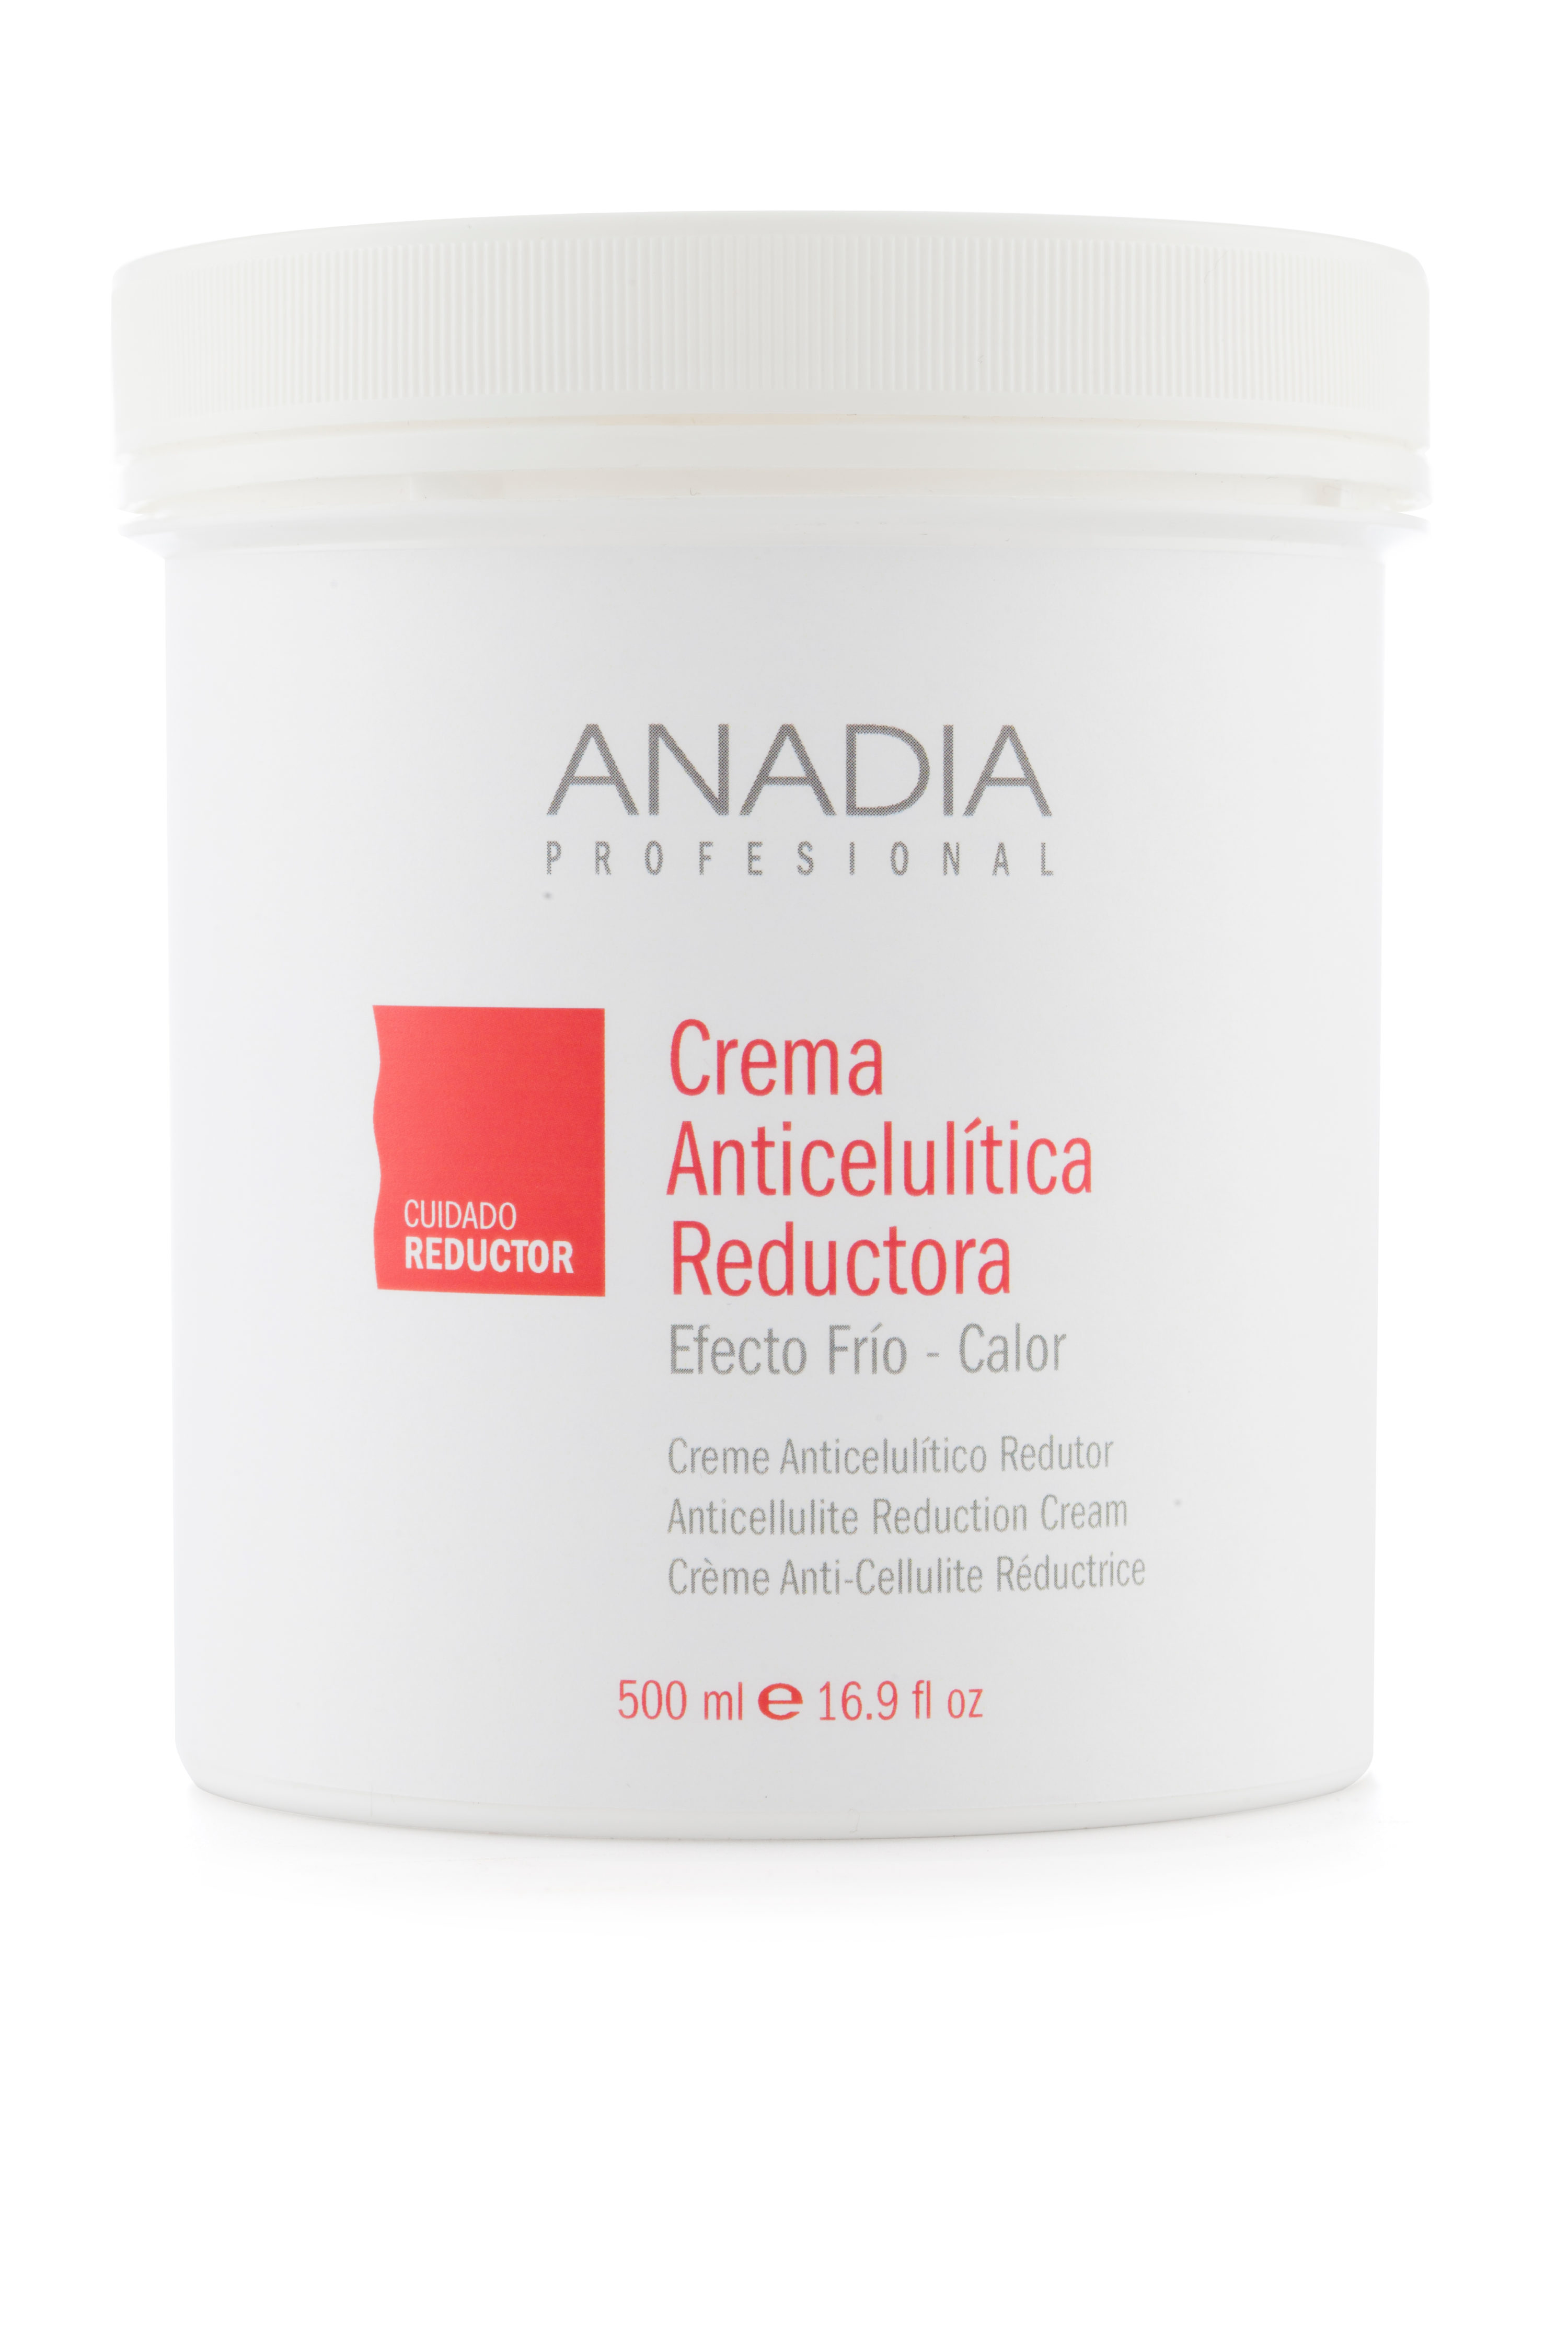 Crema Anticelulítica Reductora 500 ml - Anadia Profesional